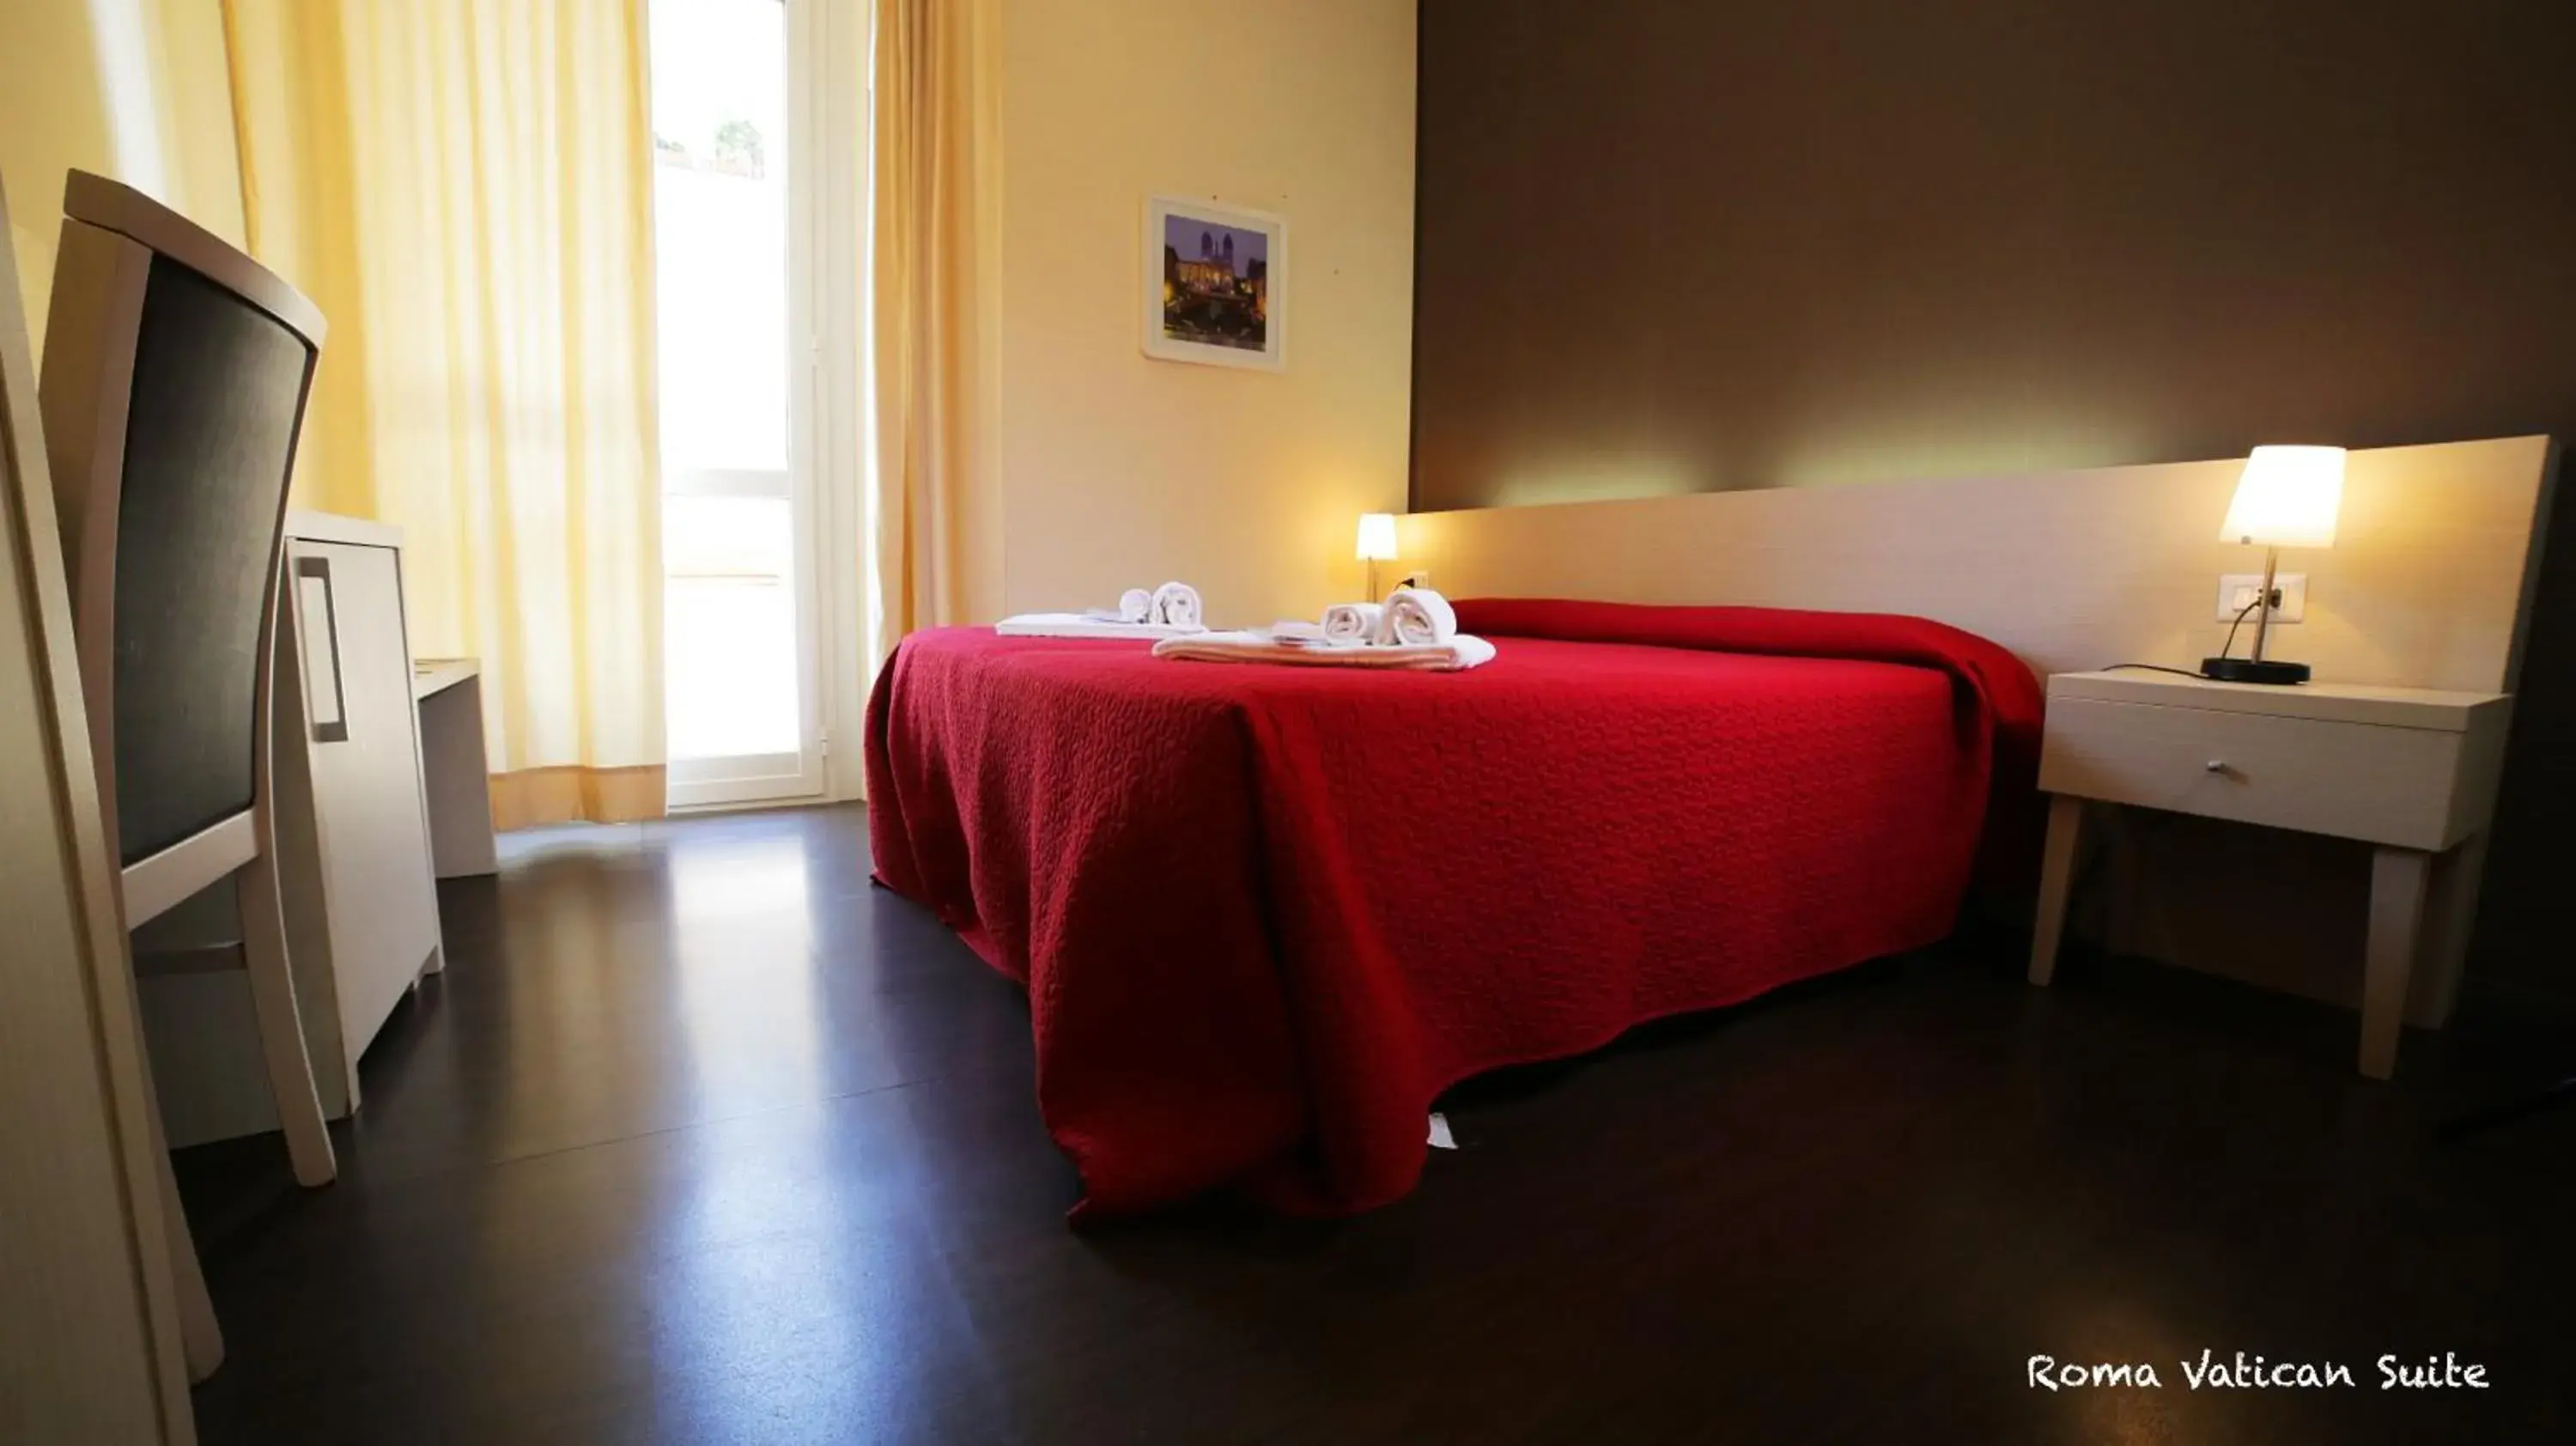 Bedroom, Room Photo in Rome Vatican Suite